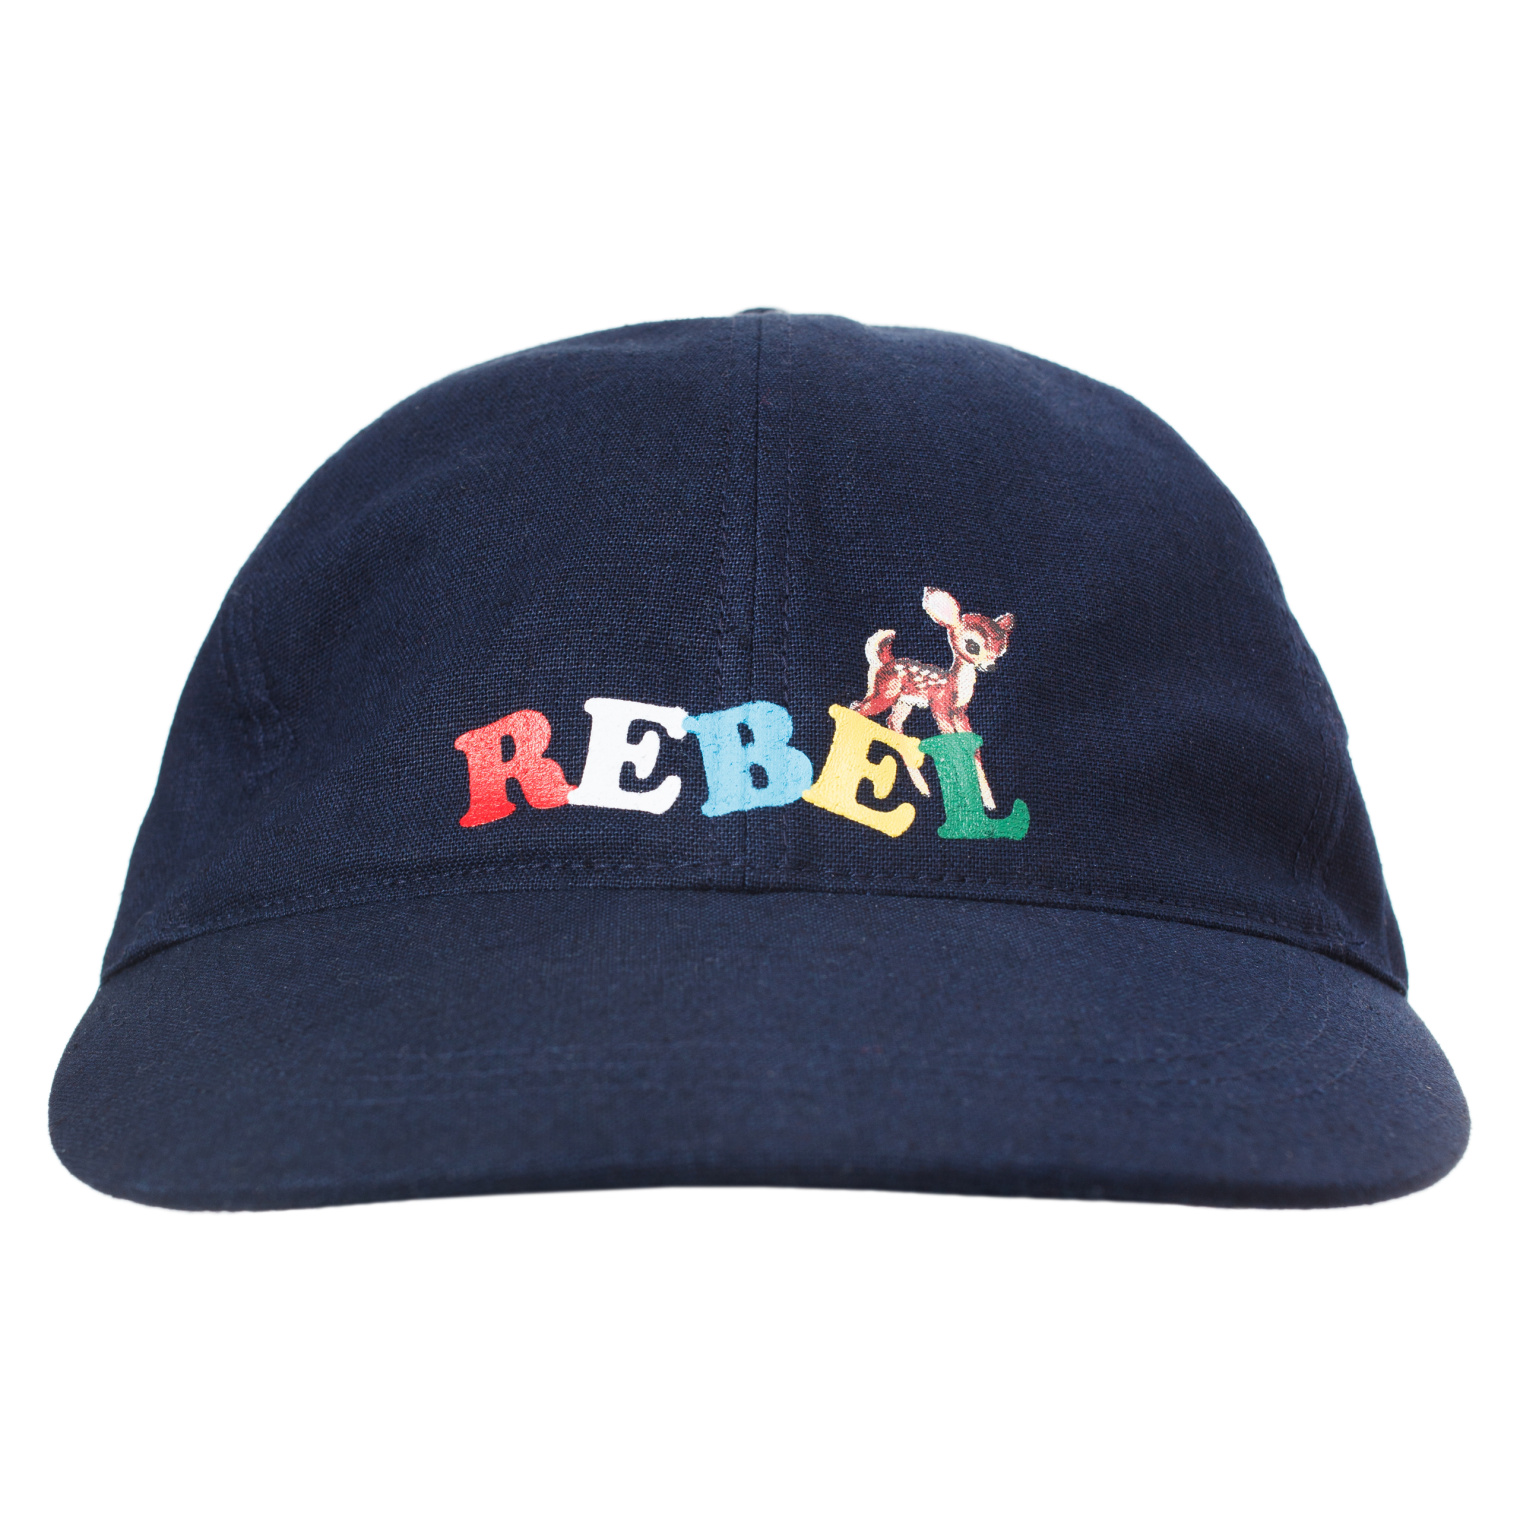 Undercover Rebel printed cap